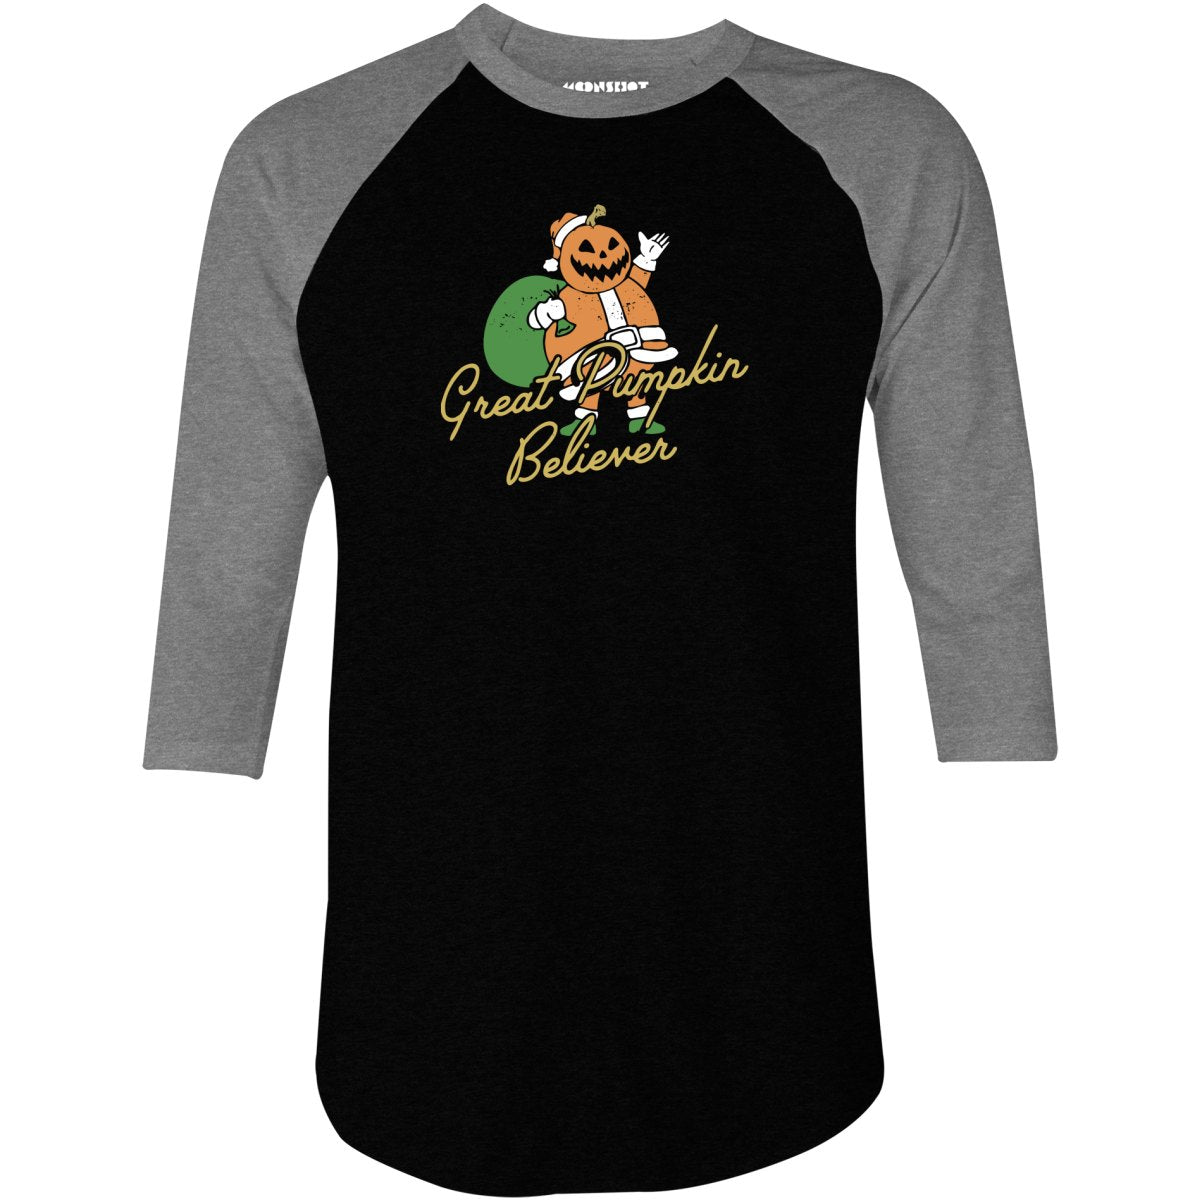 Great Pumpkin Believer - 3/4 Sleeve Raglan T-Shirt